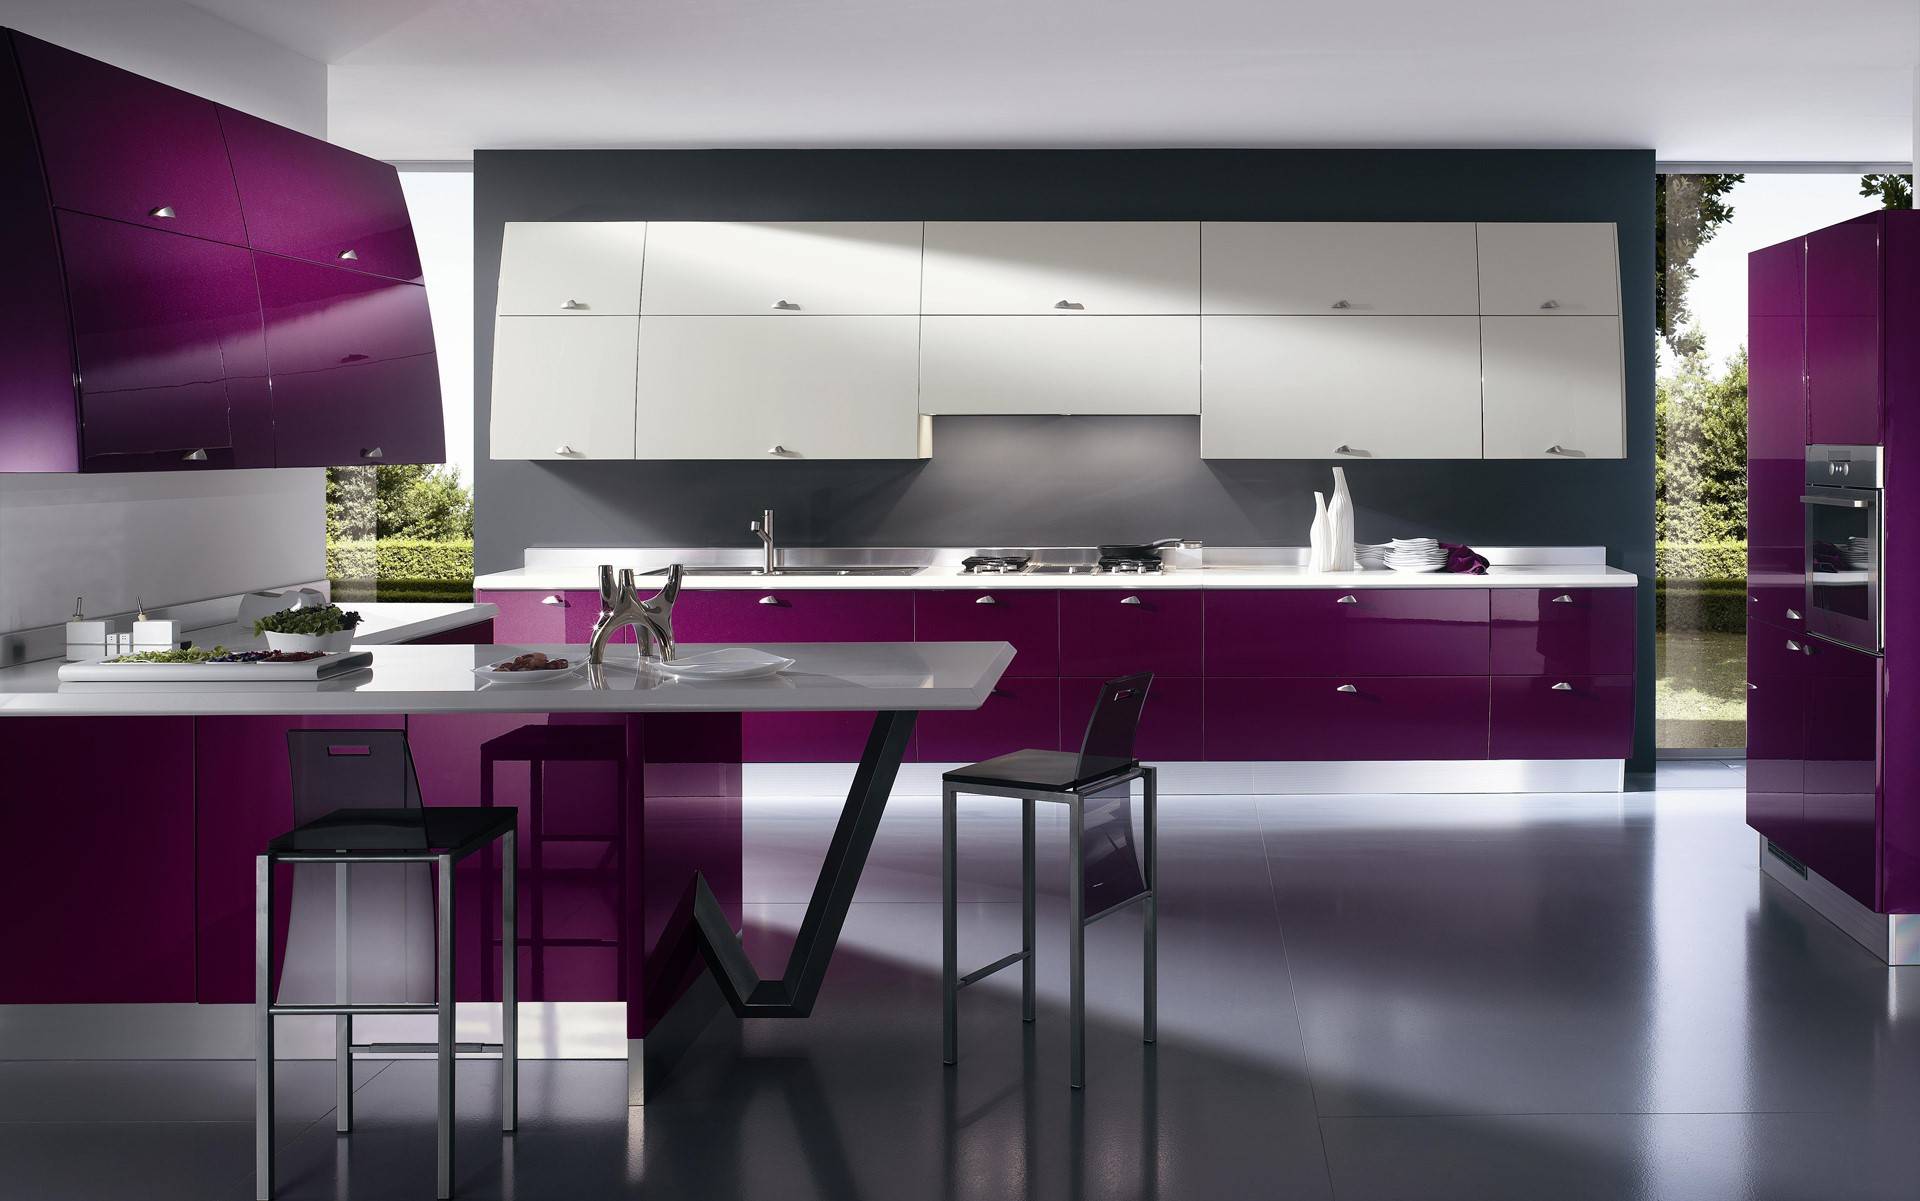 Цветовая гамма кухни — популярные в 2019 году цвета и модные дизайнерские решения